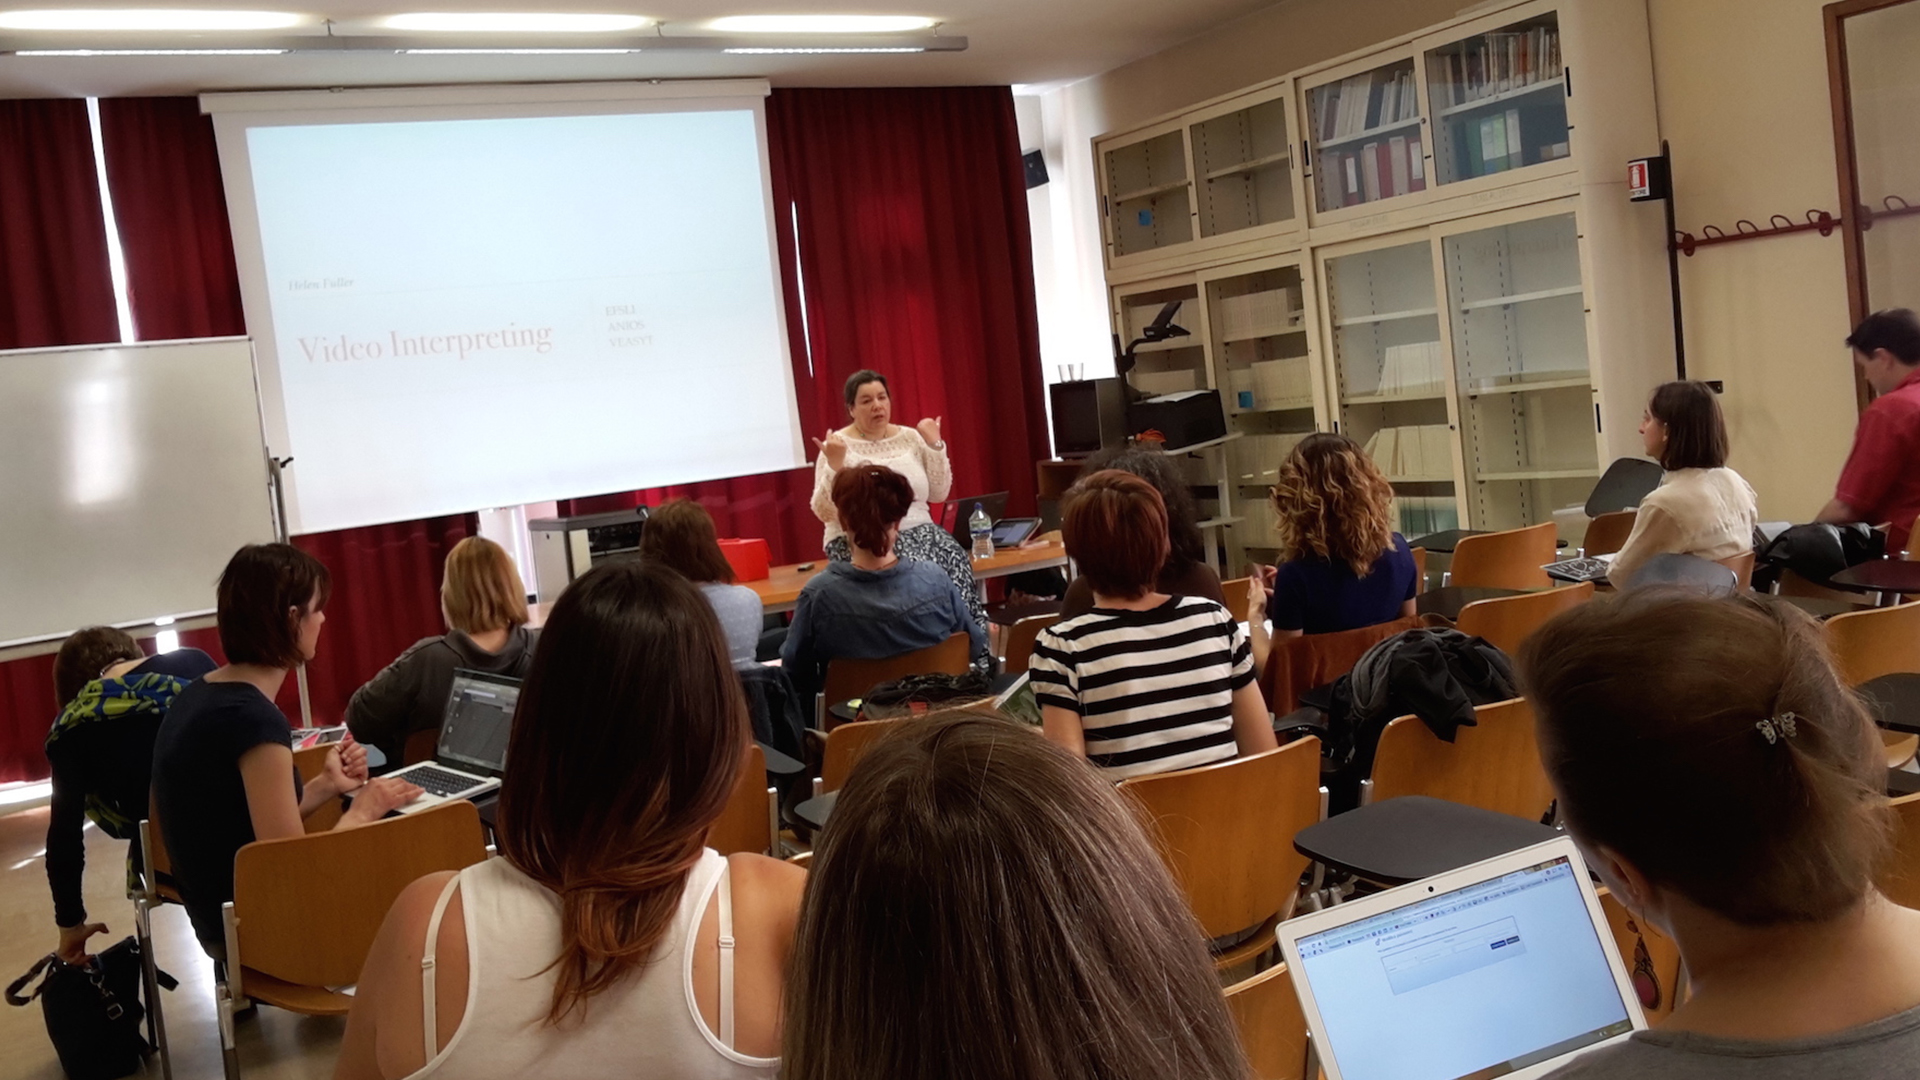 Dal 29 al 31 maggio si è svolto a Venezia il primo workshop "VRS/VRI interpreting", per lo studio e l'approfondimento delle tecniche di video-interpretariato a distanza